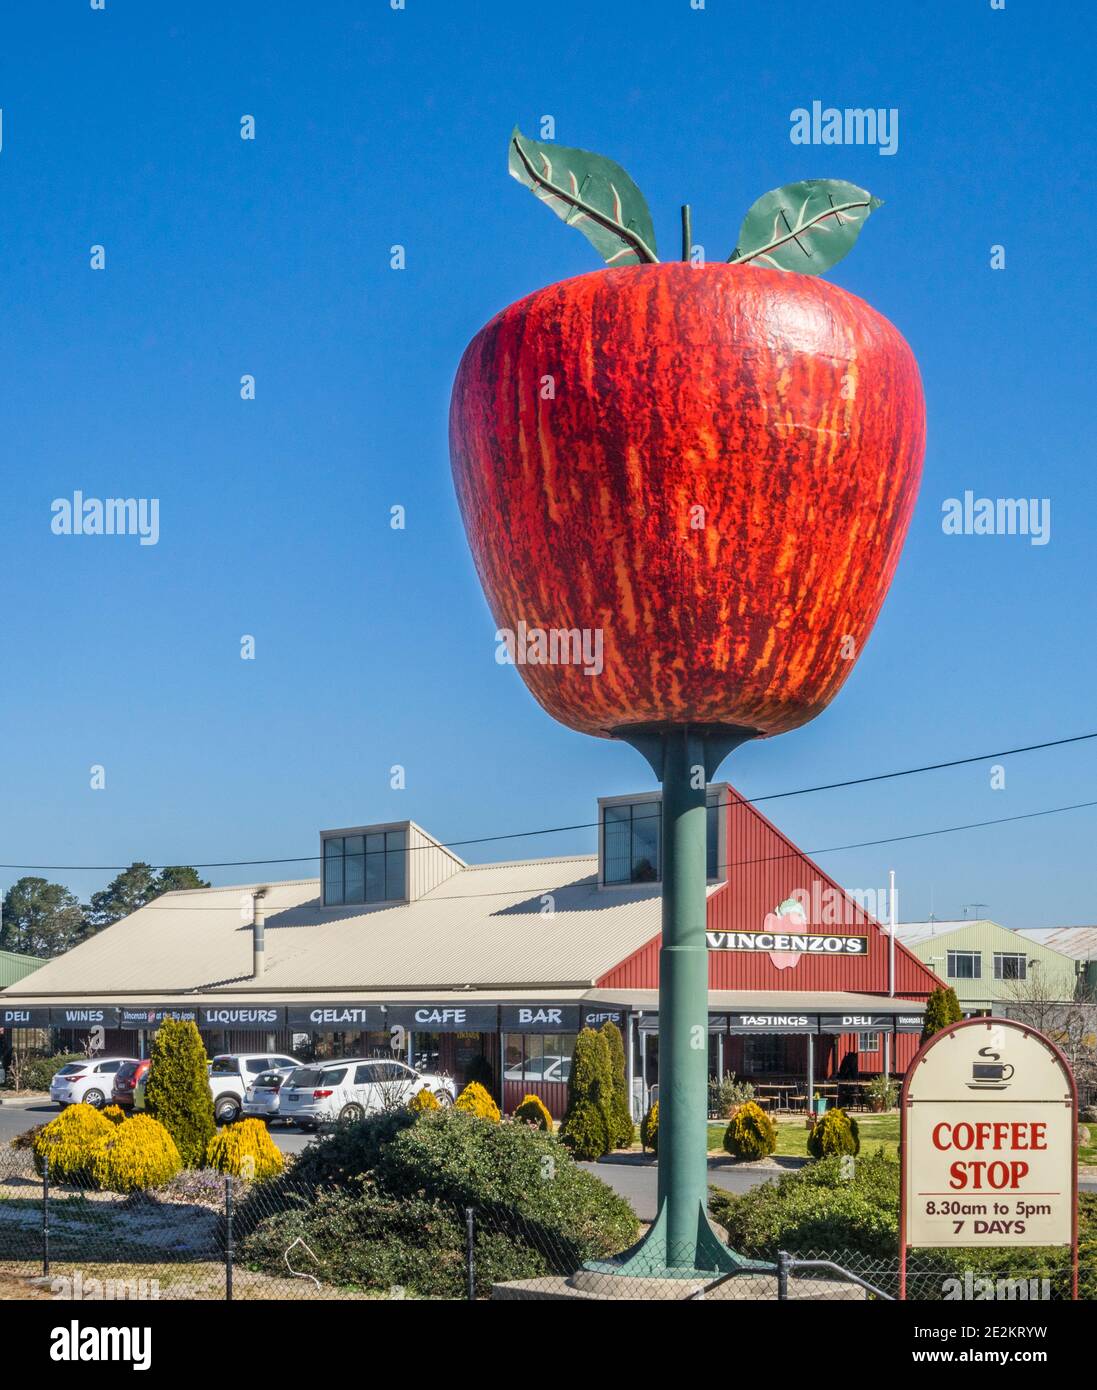 La grande pomme de Vincenzo dans la région fruitière de Thulimbah près de Stanthorpe, région de Southern Downs, sud-est du Queensland, Australie Banque D'Images